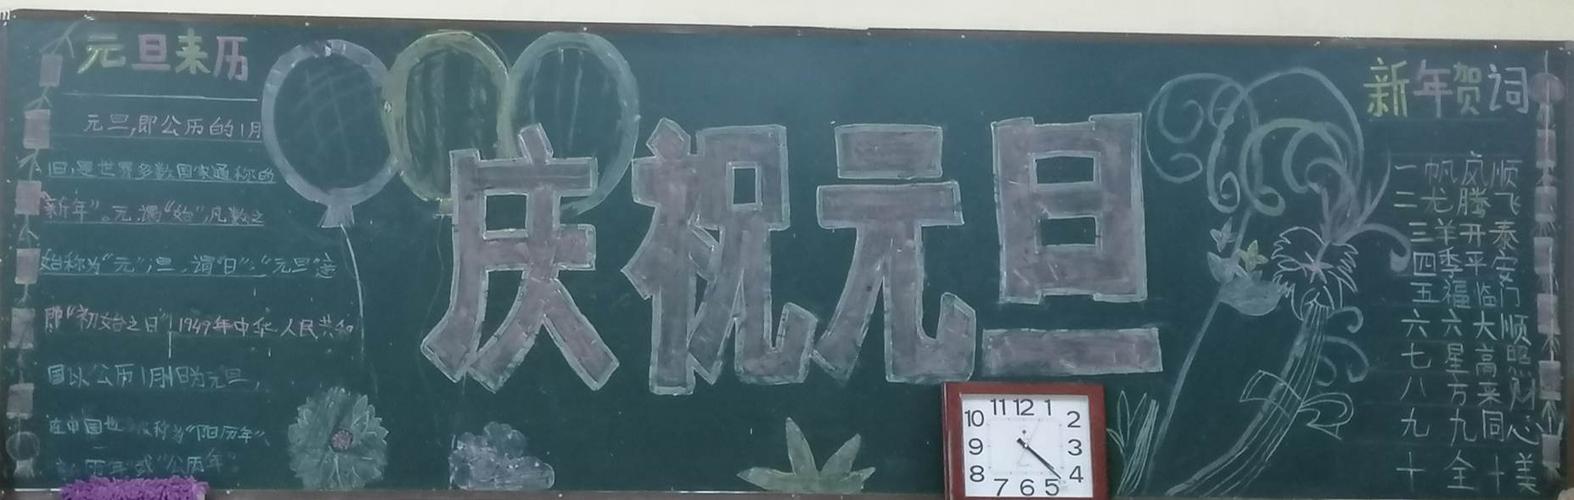 元旦 平原示范区龙源小学黑板报和心愿墙展示 写美篇  五 六年级